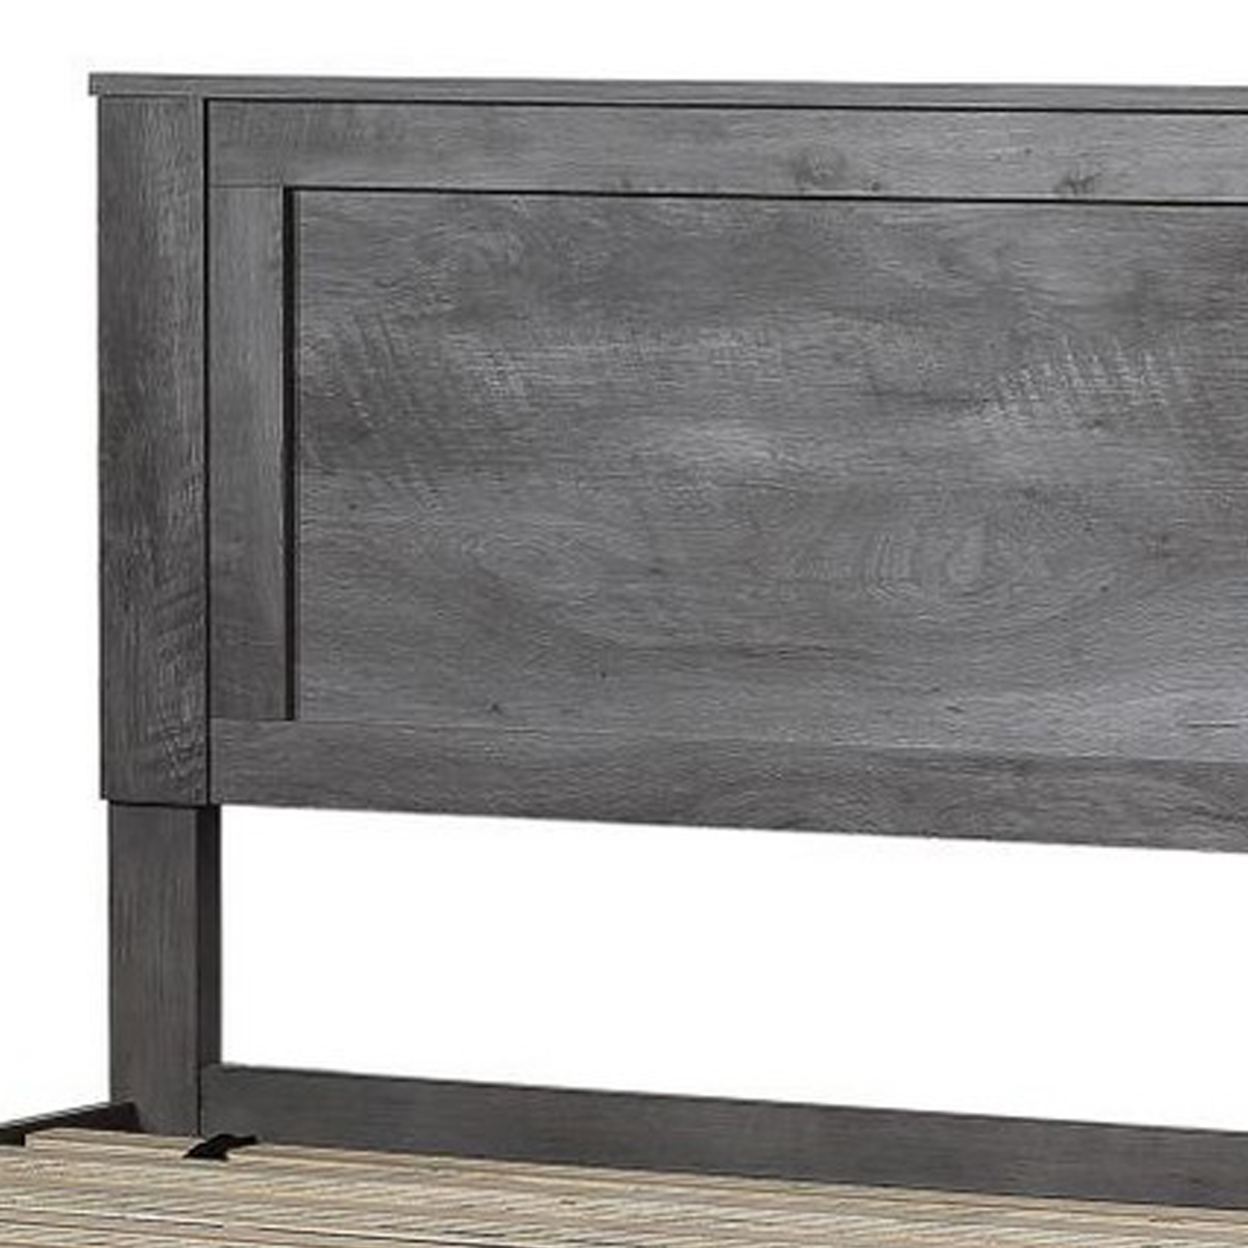 Rustic Queen Size Wooden Panel Bed, Gray Oak- Saltoro Sherpi